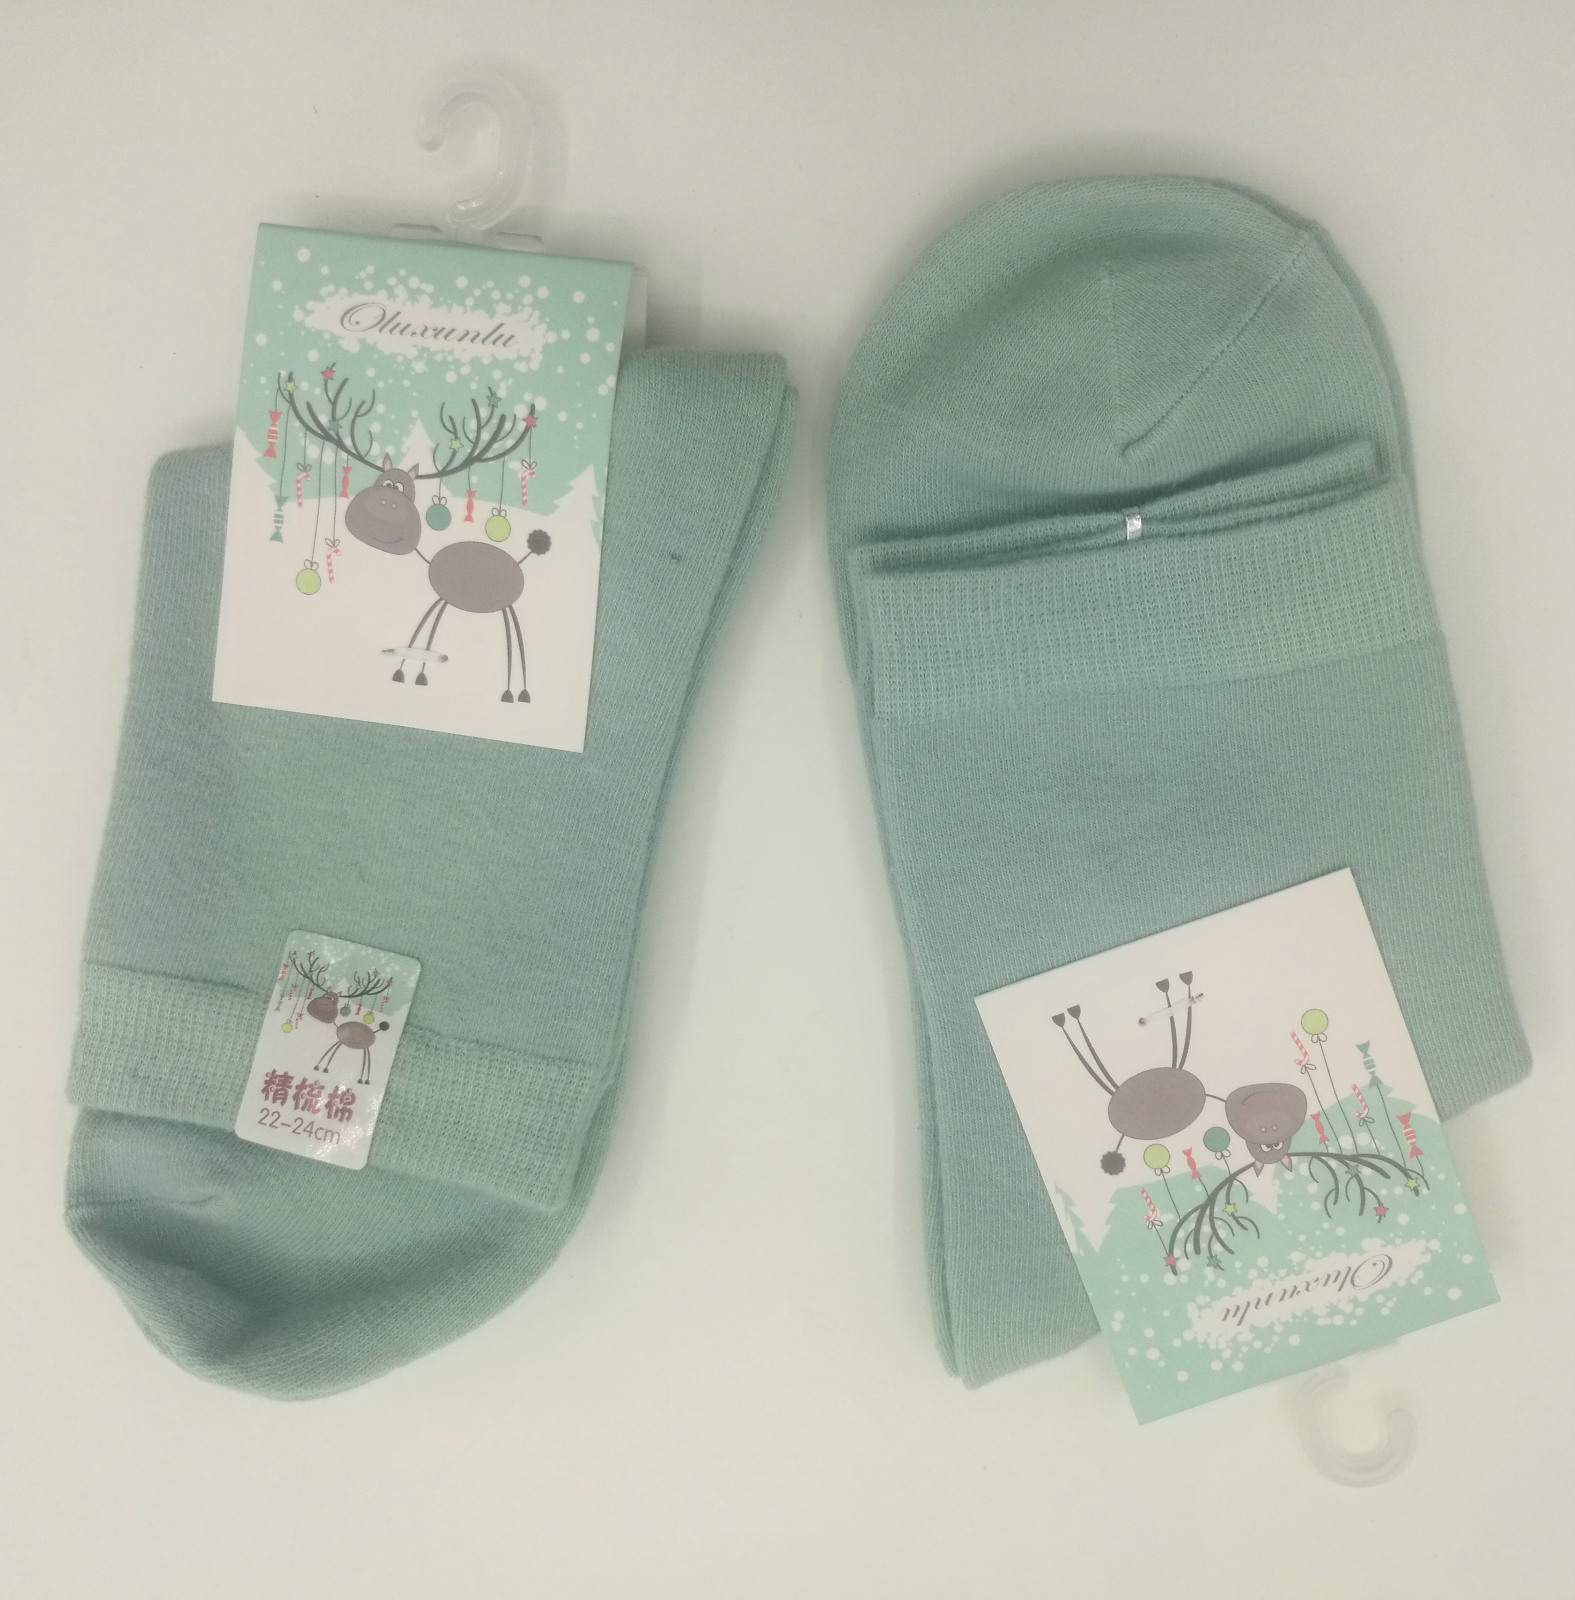 2017女士袜子女生女袜保暖加厚棉袜秋冬春款新款纯色可爱包邮绿色